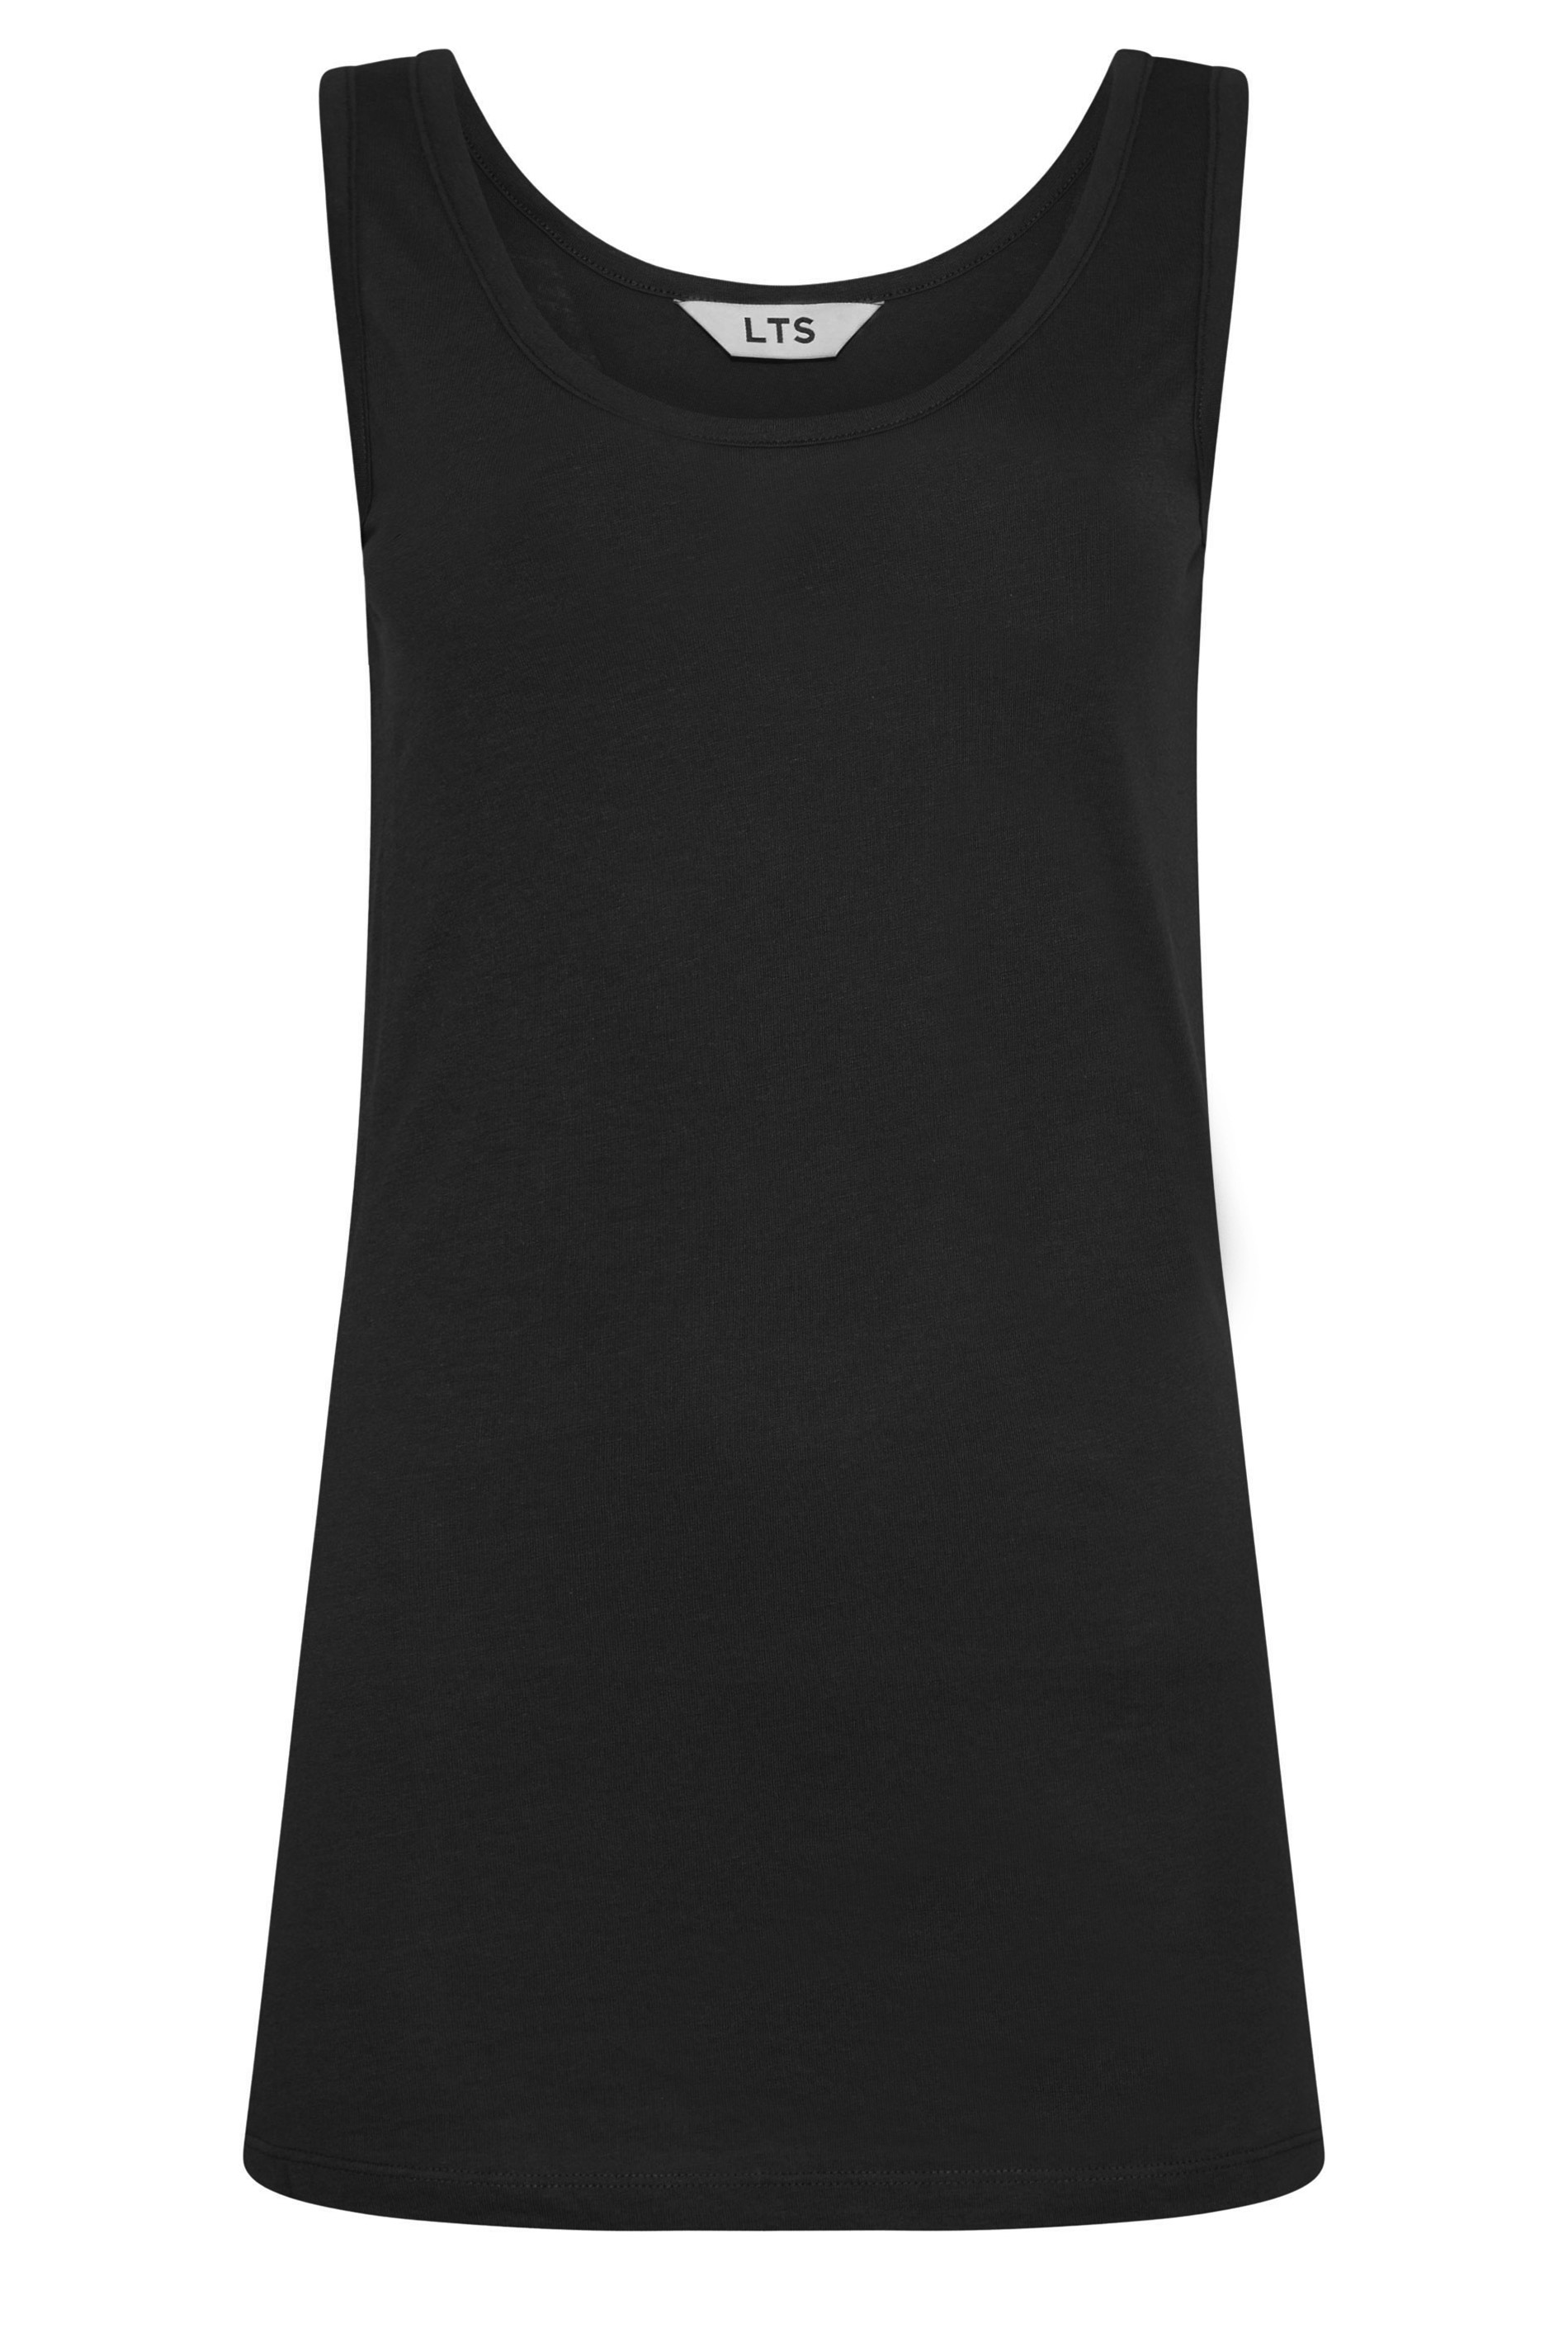 LTS Tall Women's Black Vest Top